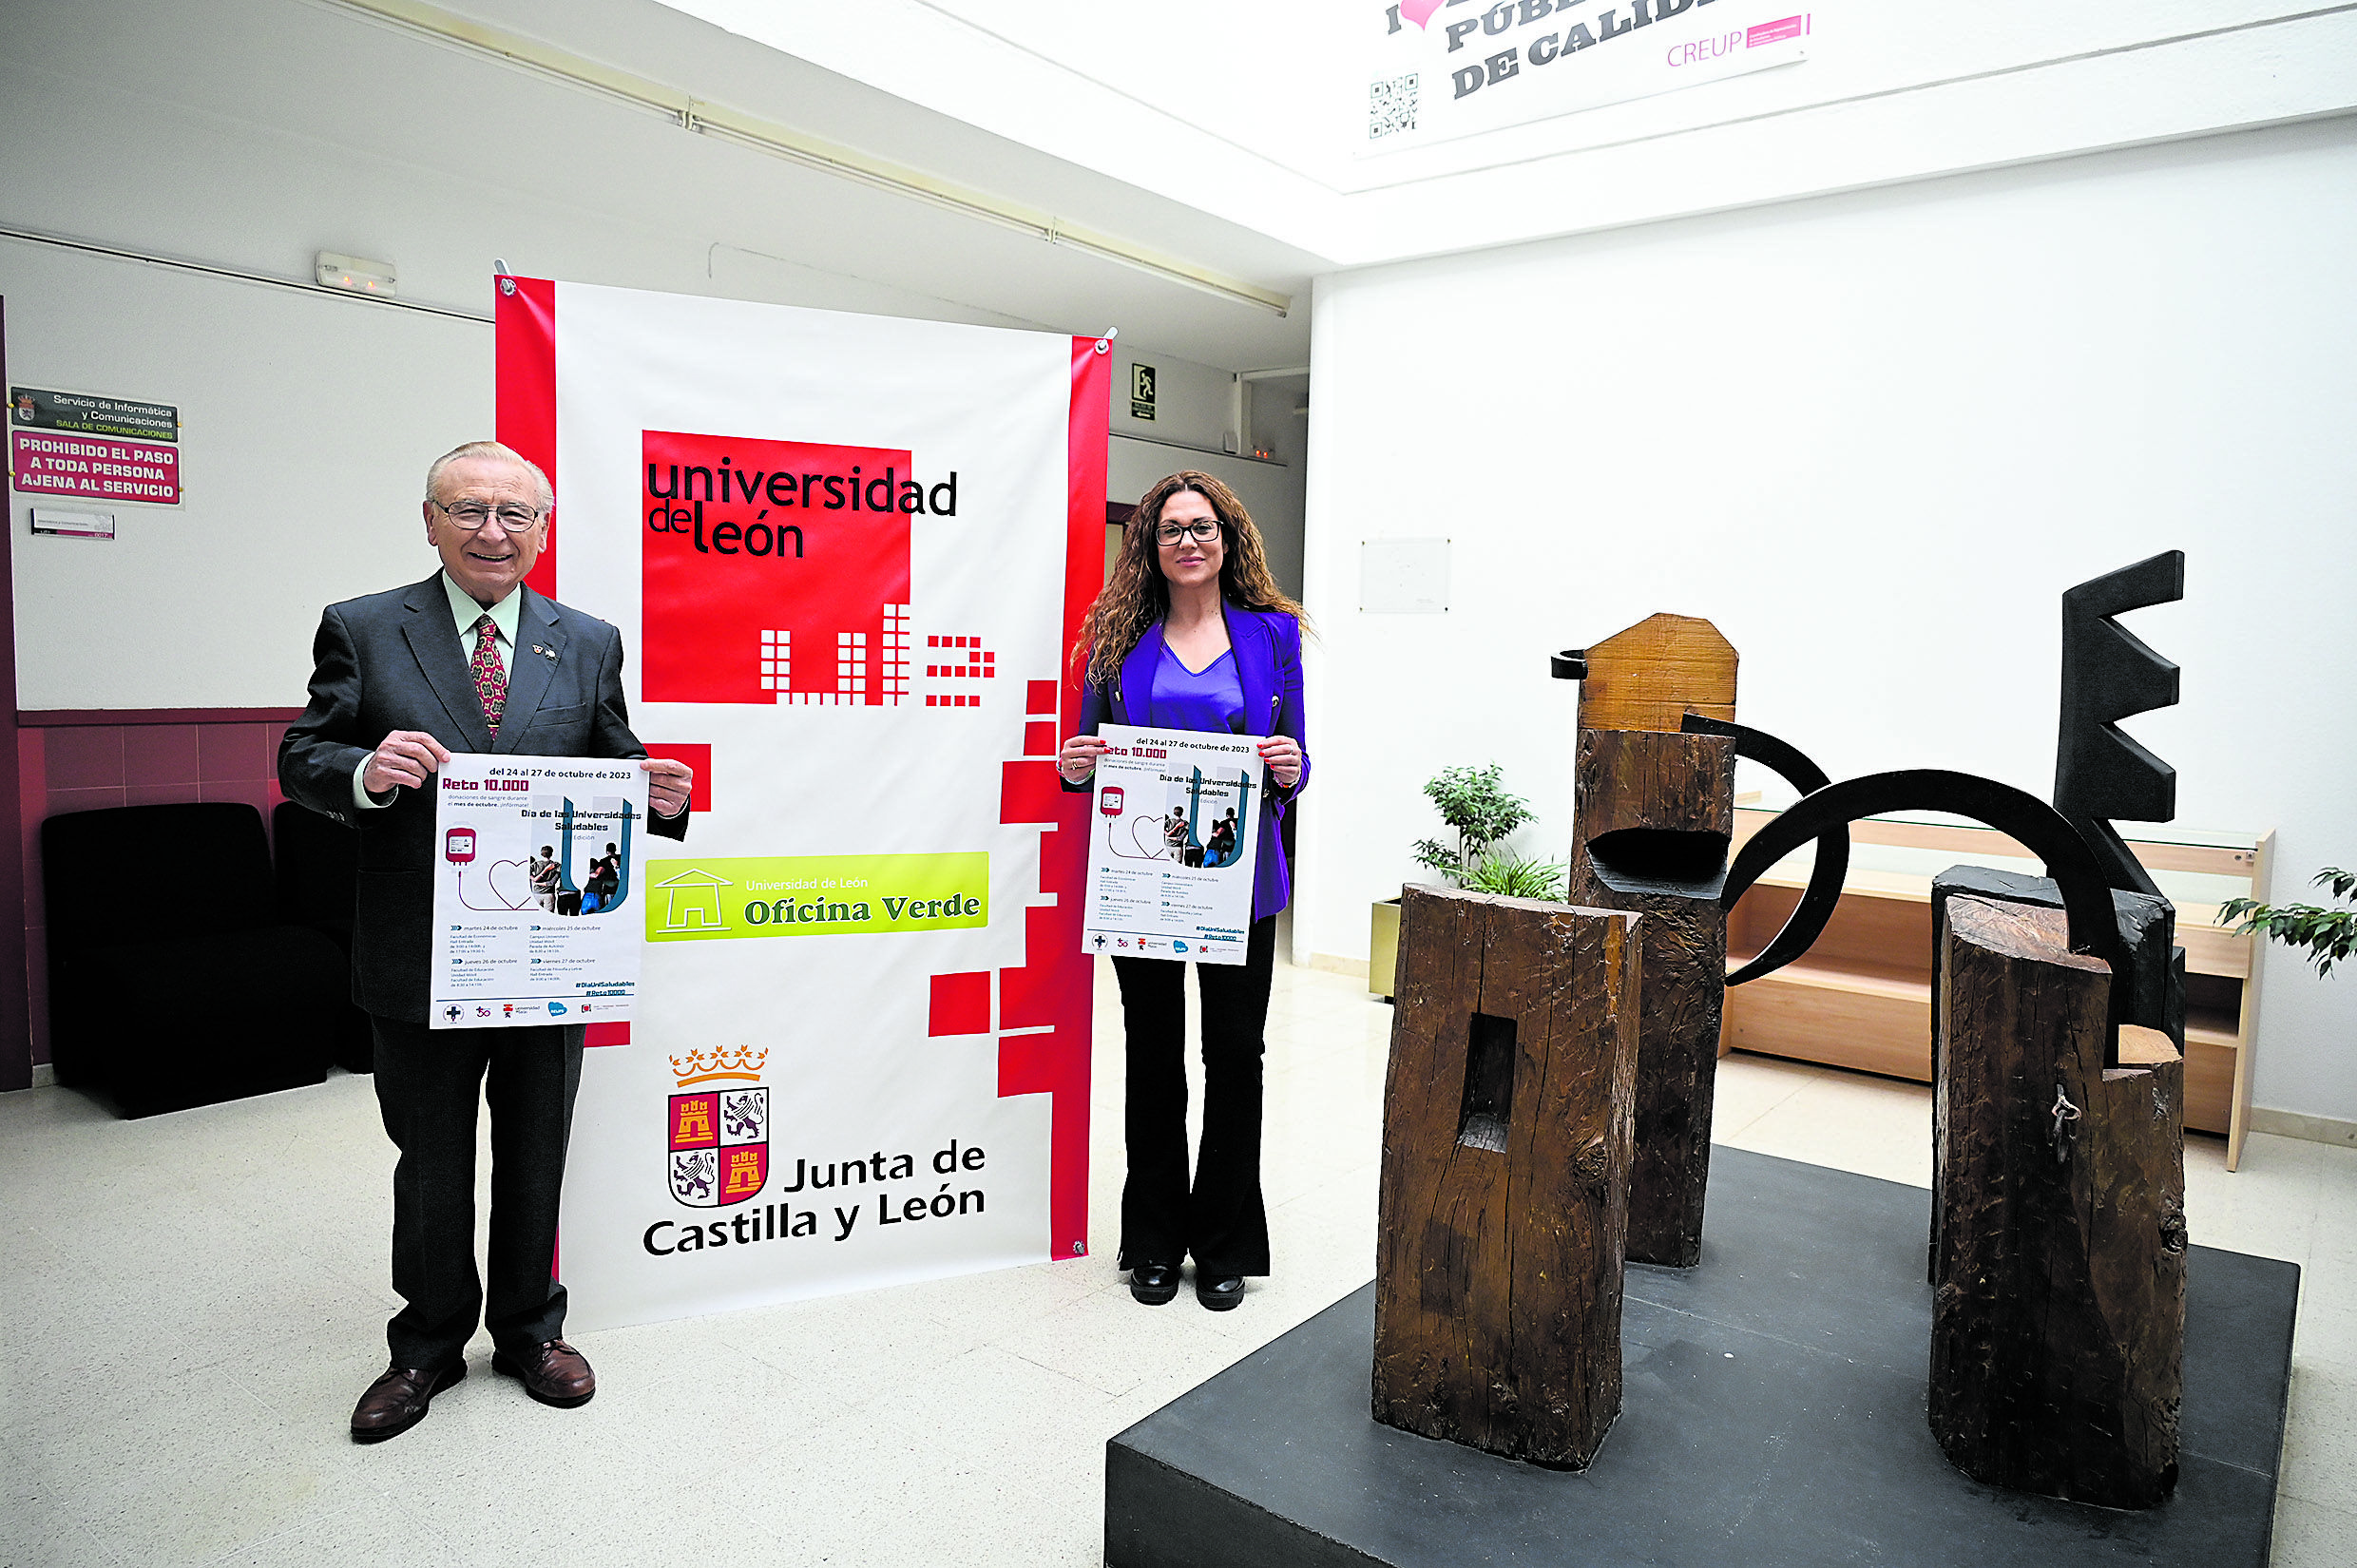 Presentación de la Semana del Donante Universitario en León. | SAÚL ARÉN